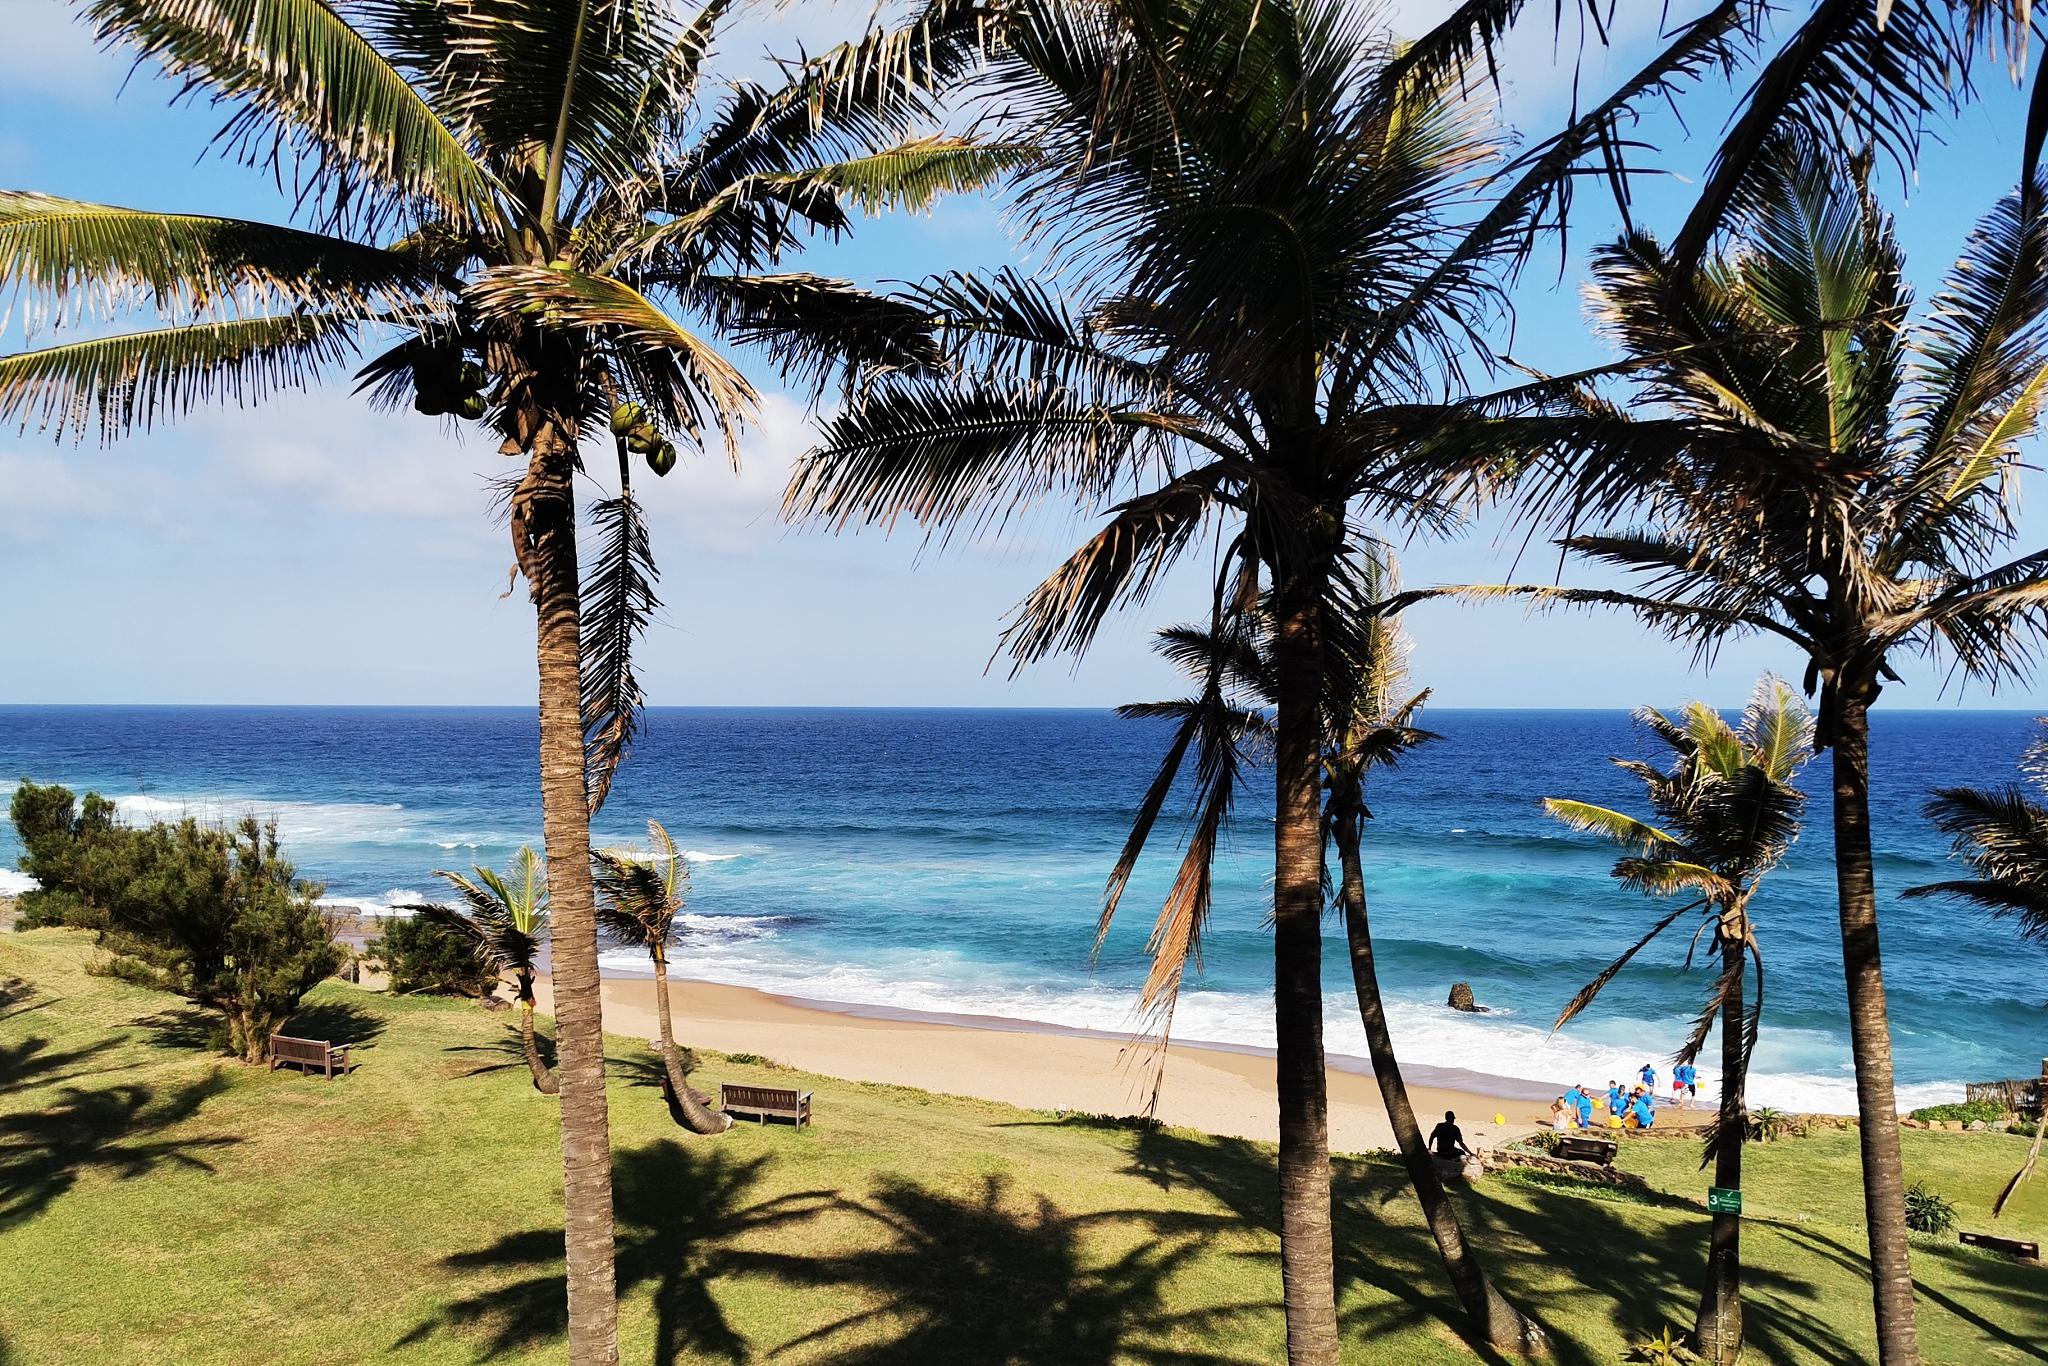 夏威夷旅游攻略 夏威夷是一个美丽的度假胜地,以其壮观的海滩,蓝天